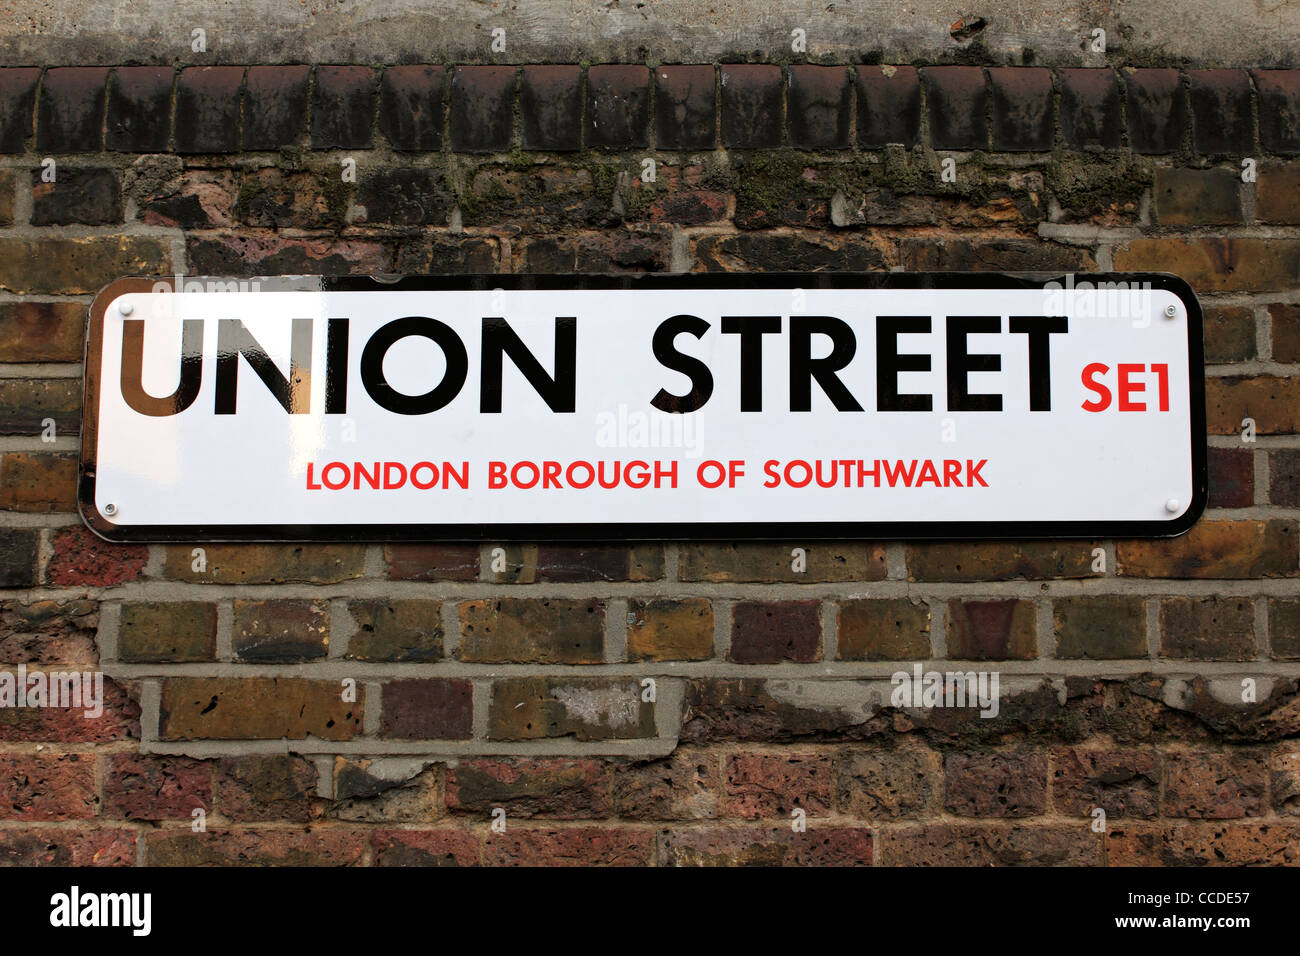 Union street, London Borough of Southwark, SE1 England UK Stock Photo